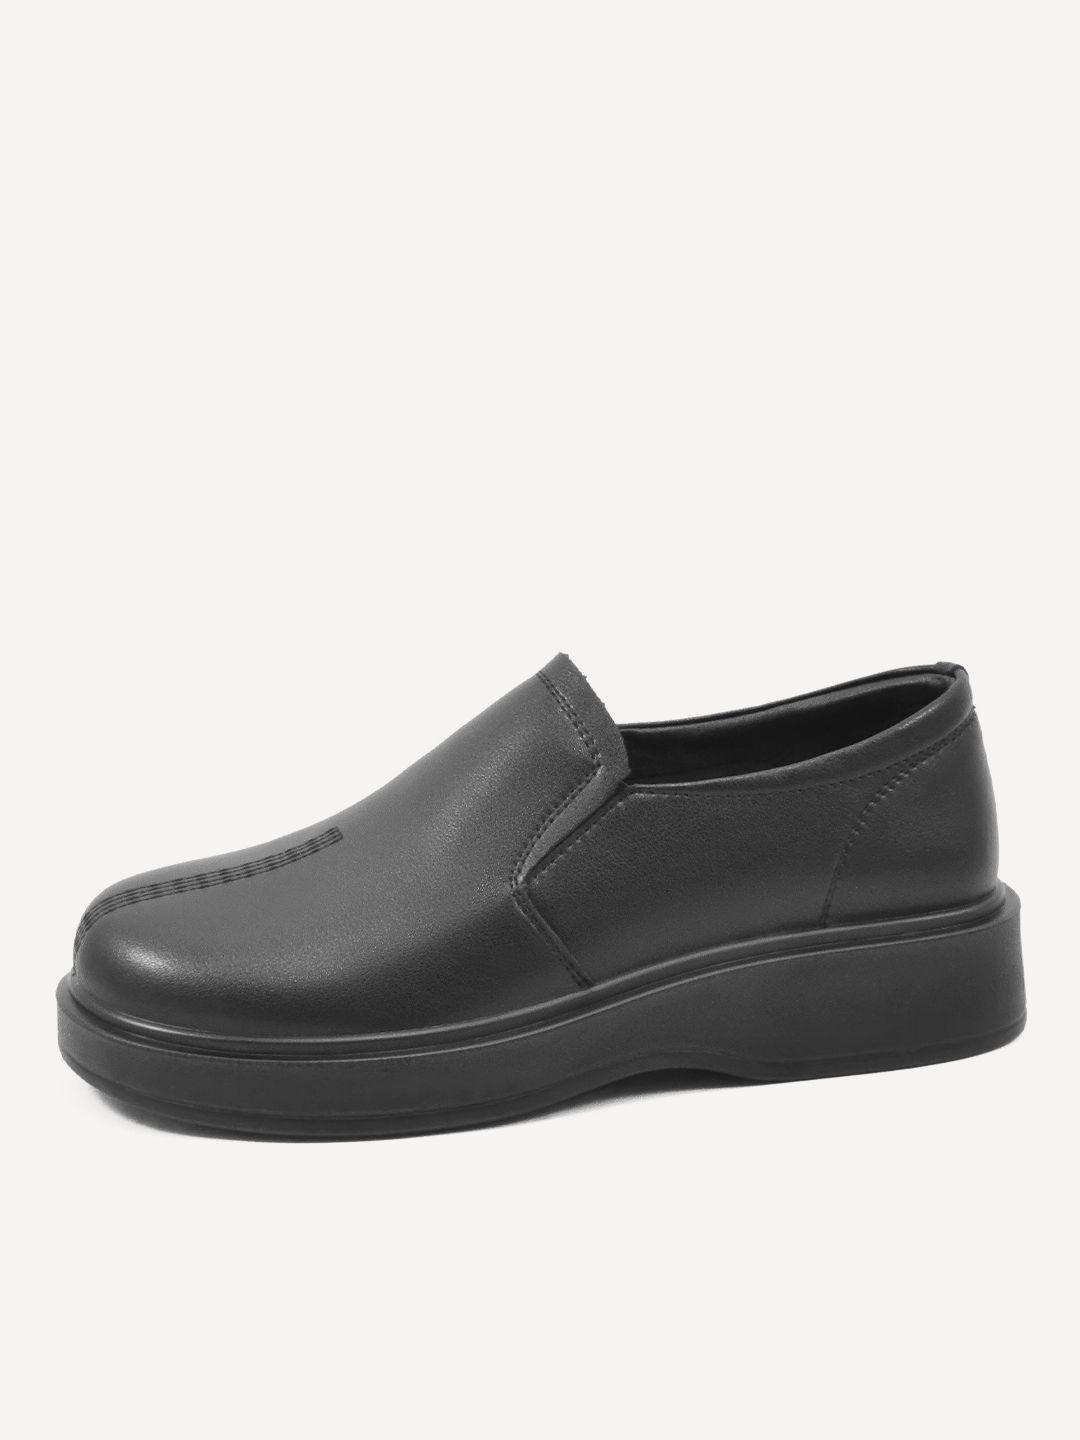 Туфли женские Baden GJ040-020 черные 37 RU